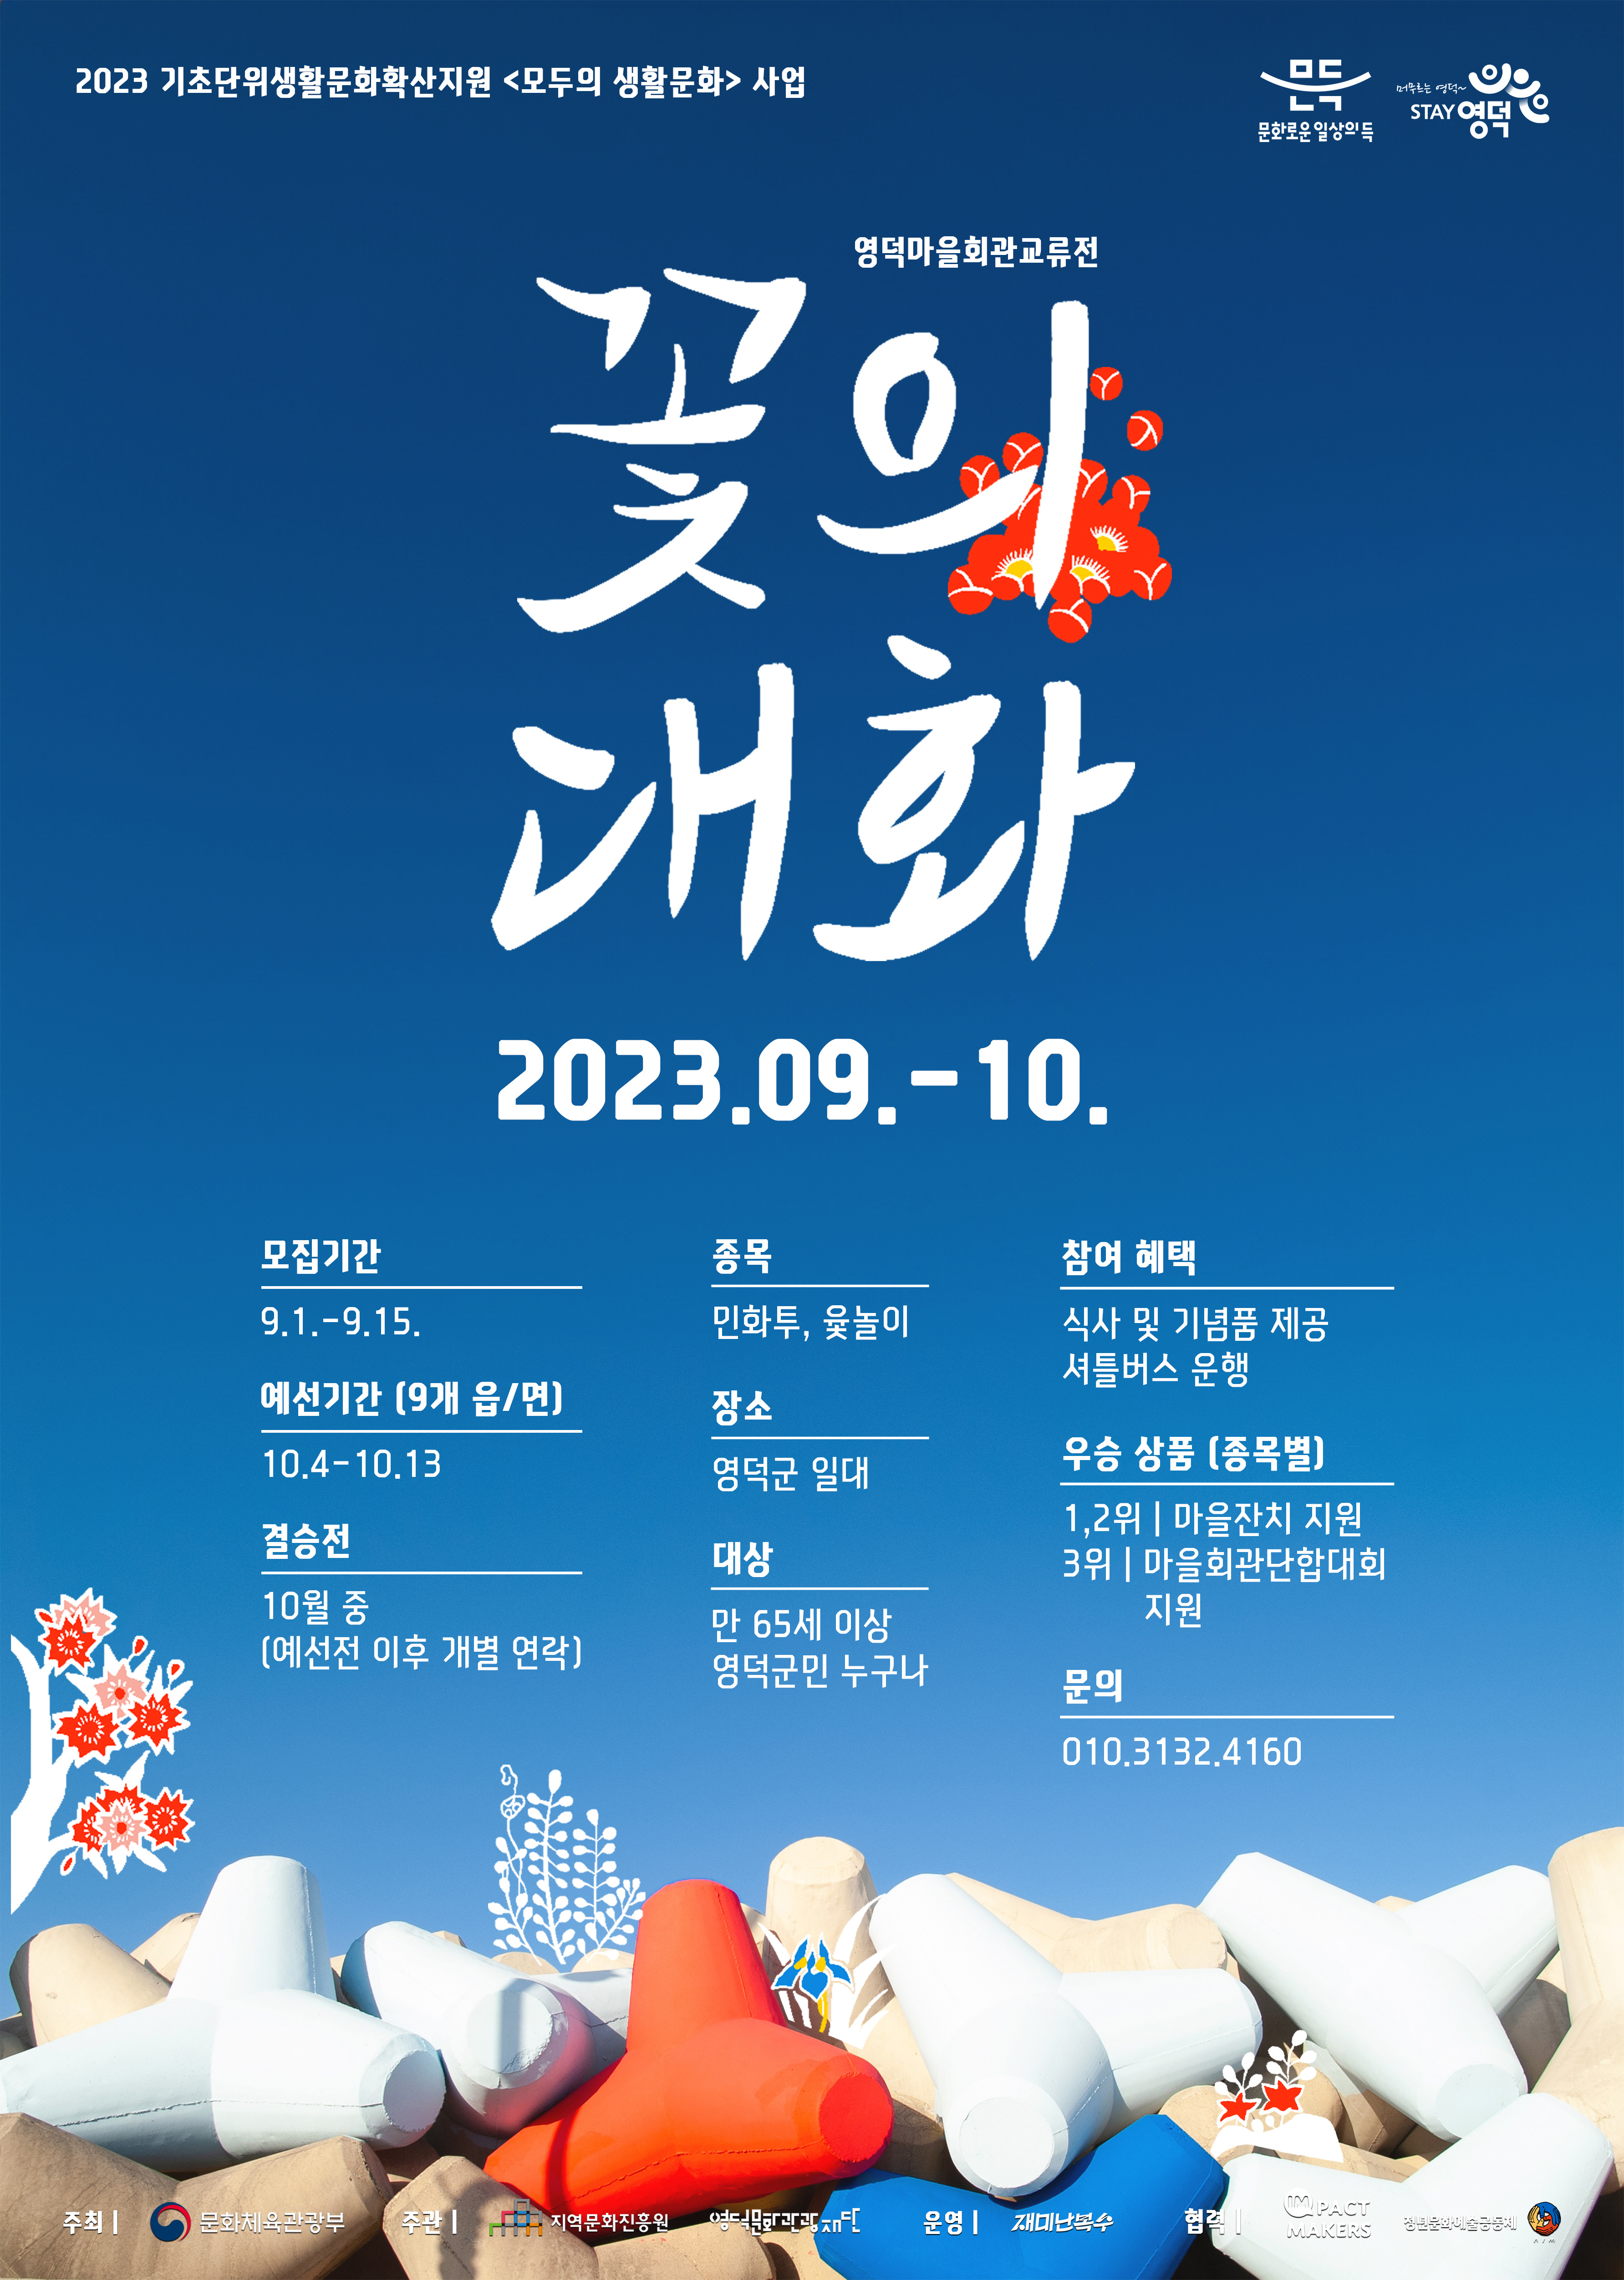 2023영덕마을회관교류전<꽃의대화> 참여마을 모집1